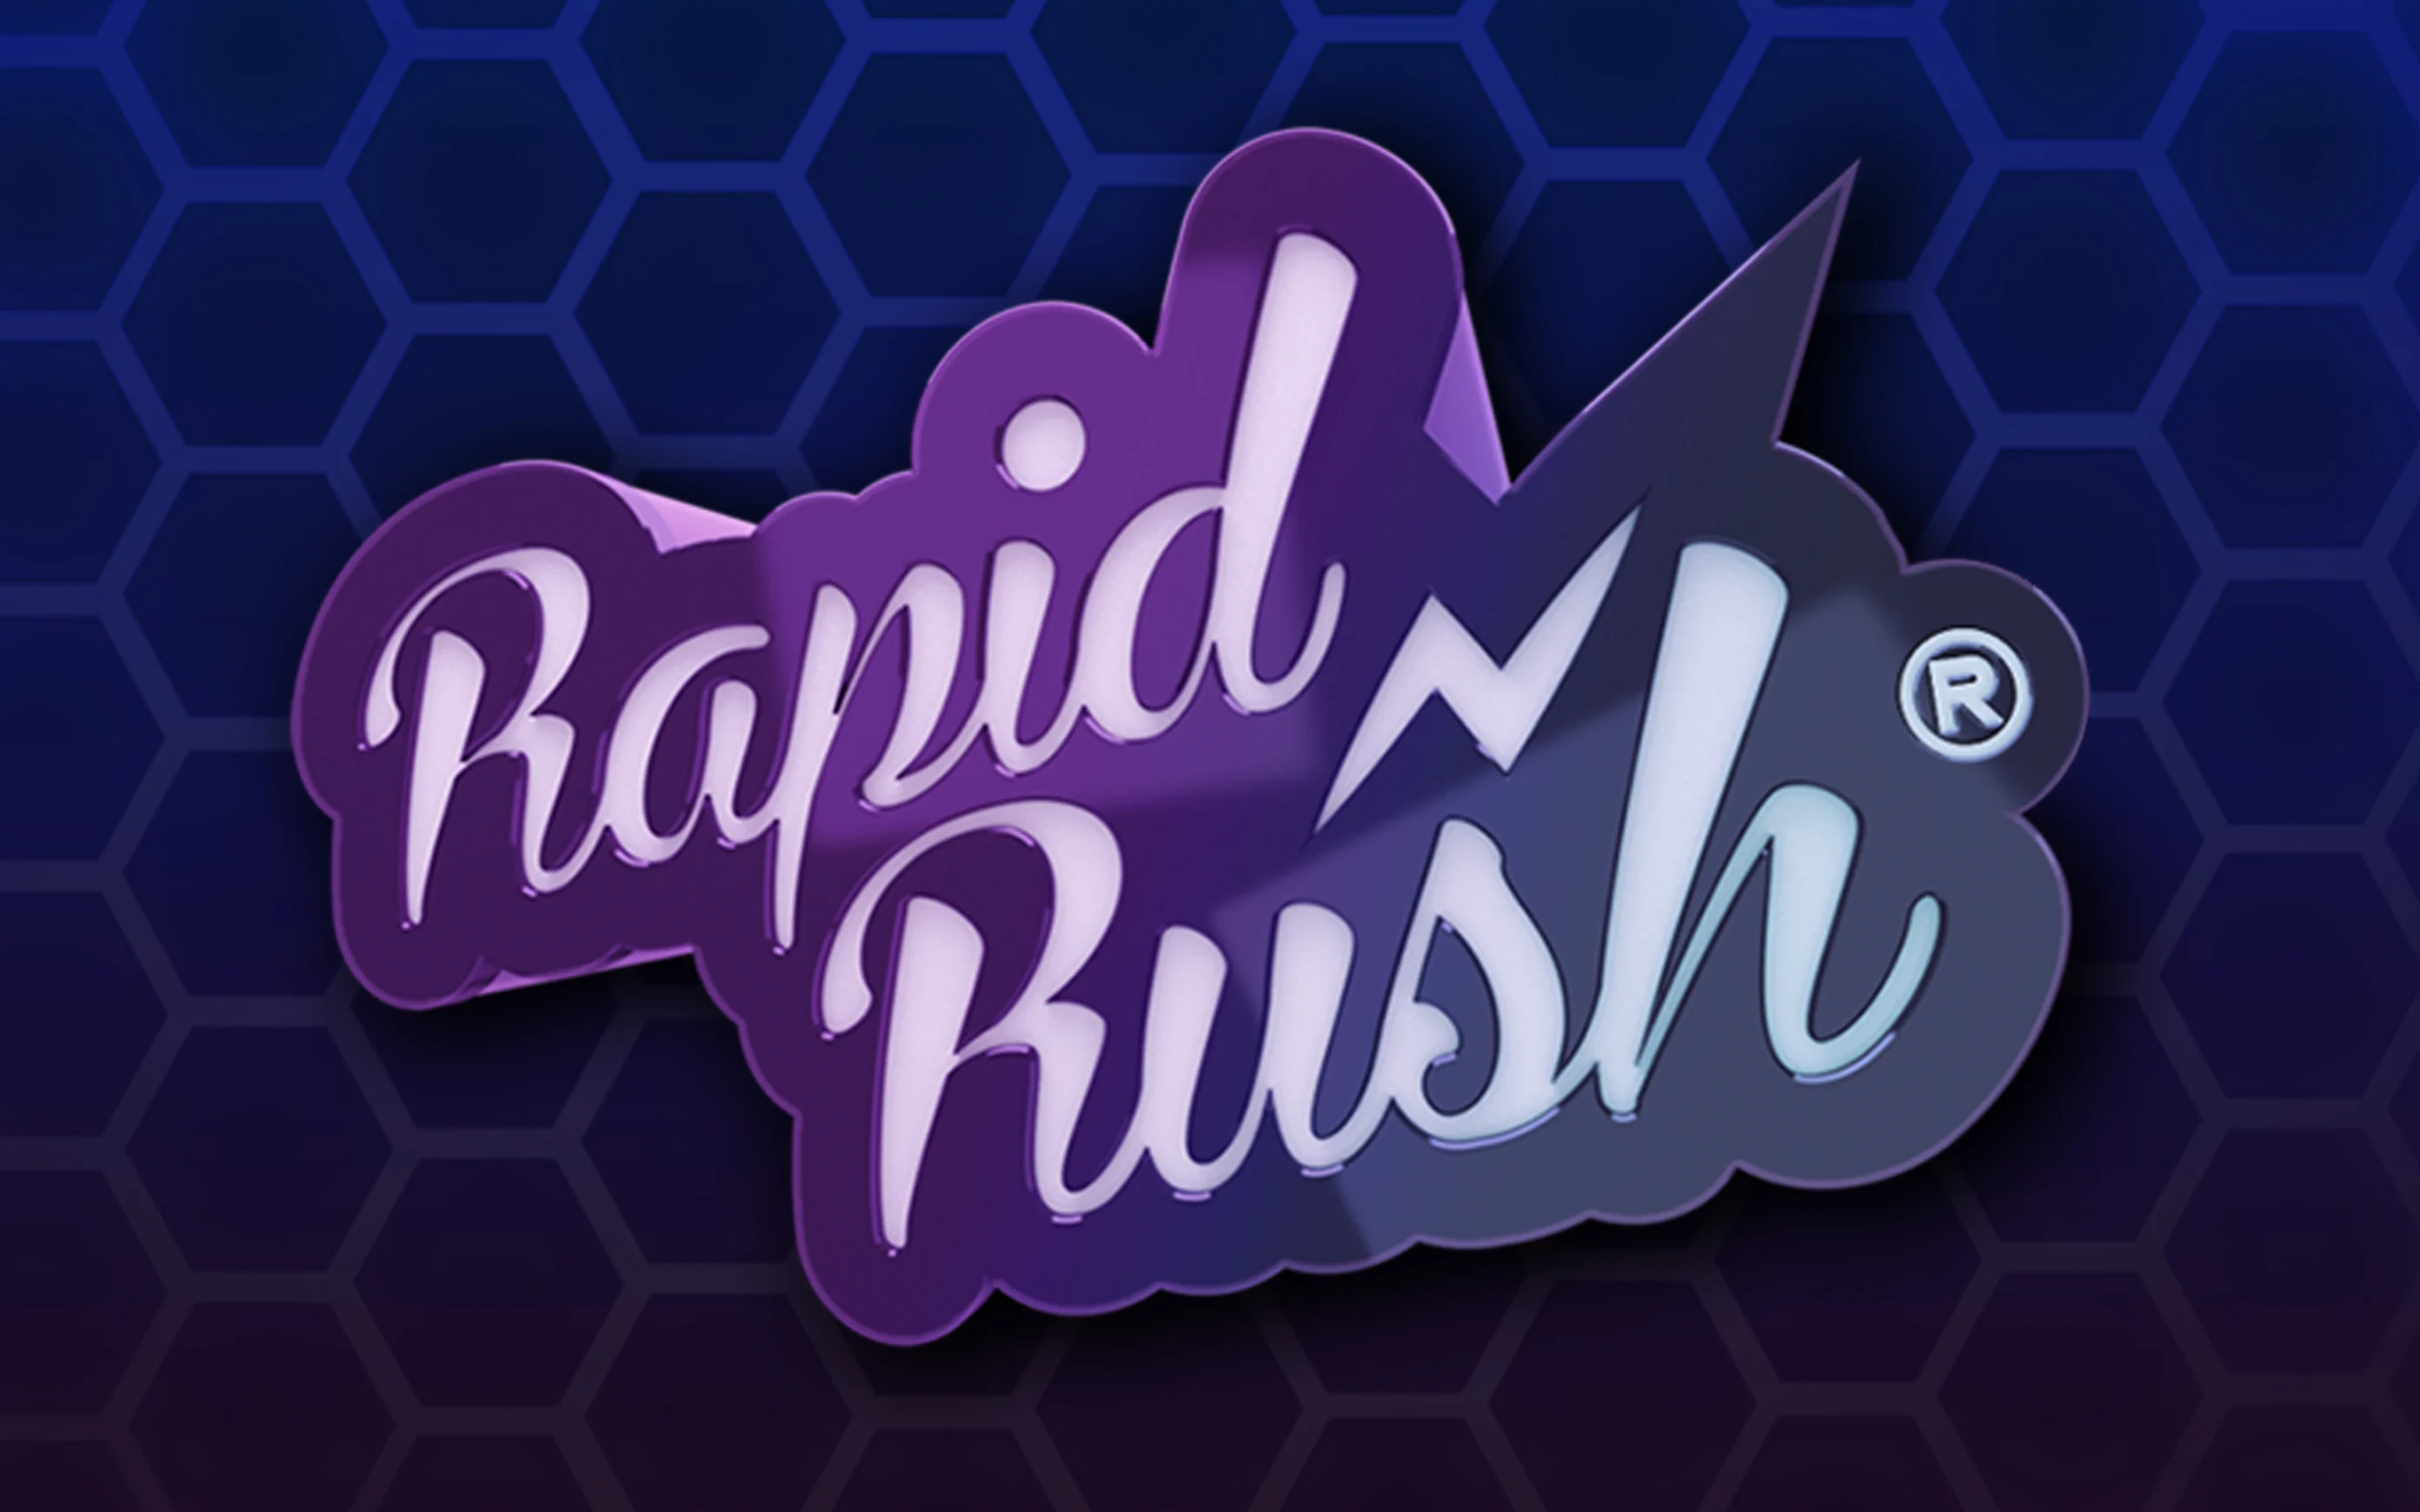 Play Rapid Rush on Starcasino.be online casino